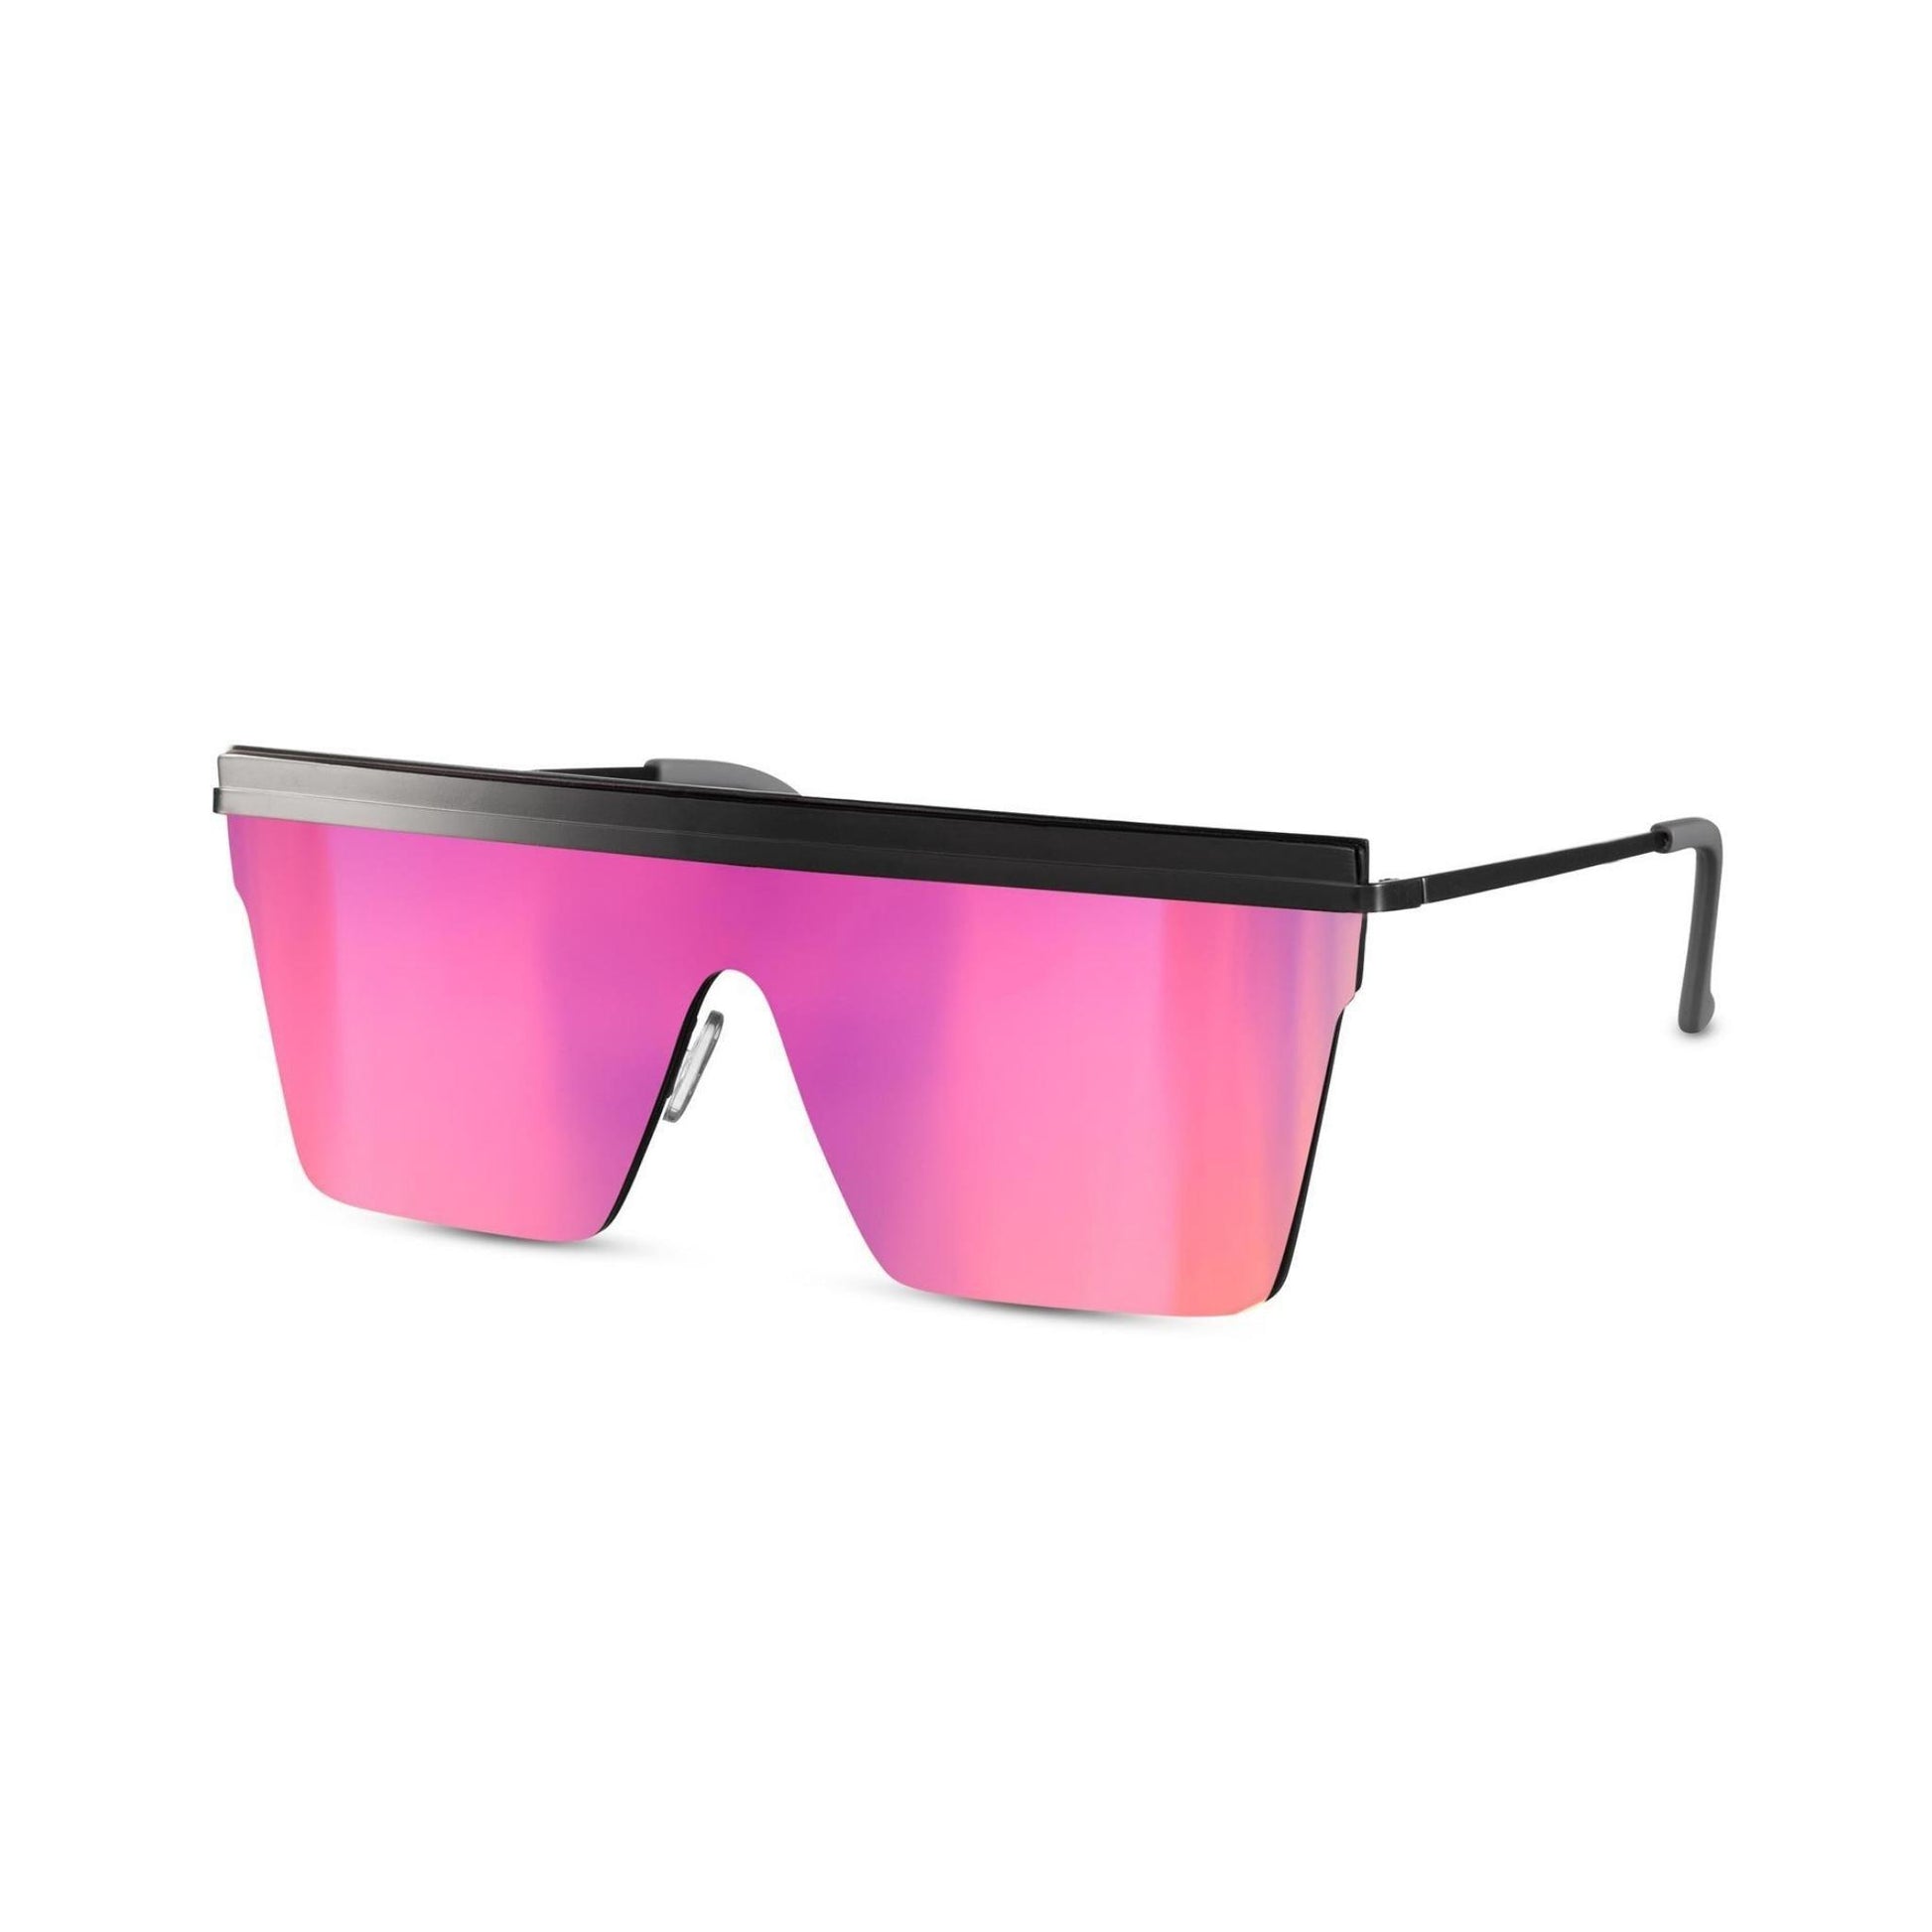 Γυαλιά ηλίου Jackie (μάσκα) της Exposure Sunglasses με προστασία UV400 με ασημί σκελετό και μωβ φακό.Πλάγια προβολή